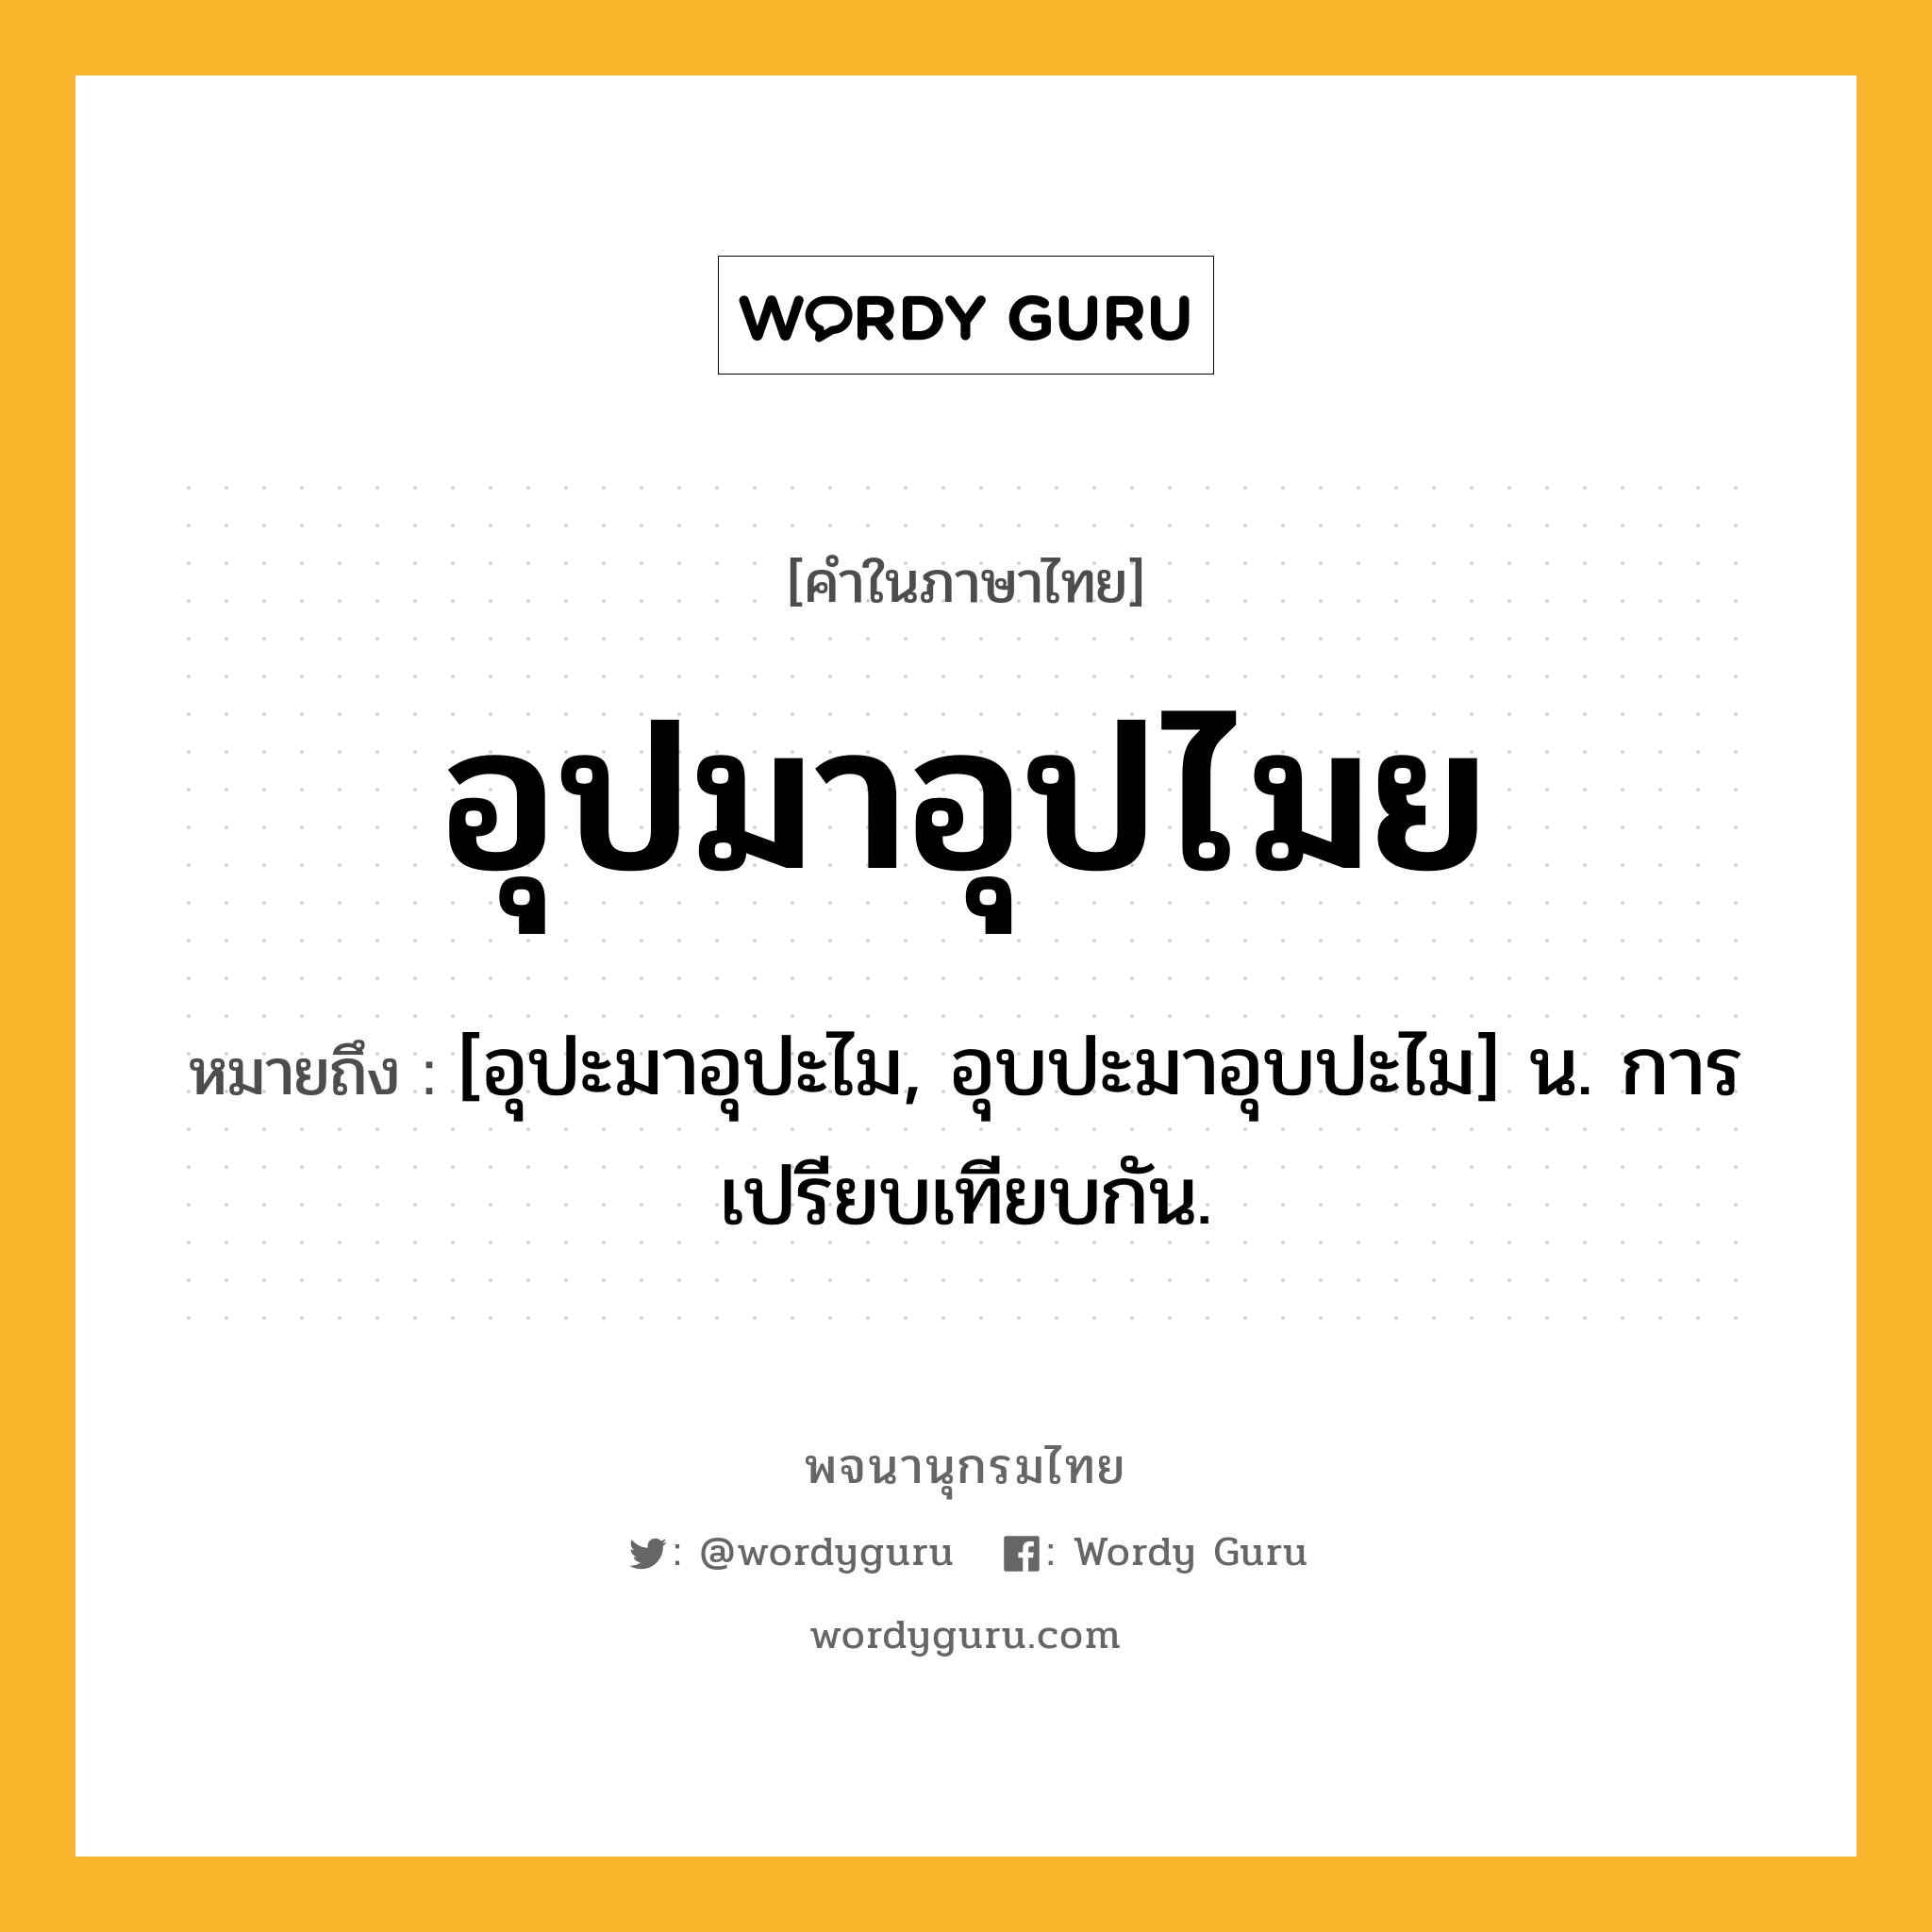 อุปมาอุปไมย หมายถึงอะไร?, คำในภาษาไทย อุปมาอุปไมย หมายถึง [อุปะมาอุปะไม, อุบปะมาอุบปะไม] น. การเปรียบเทียบกัน.